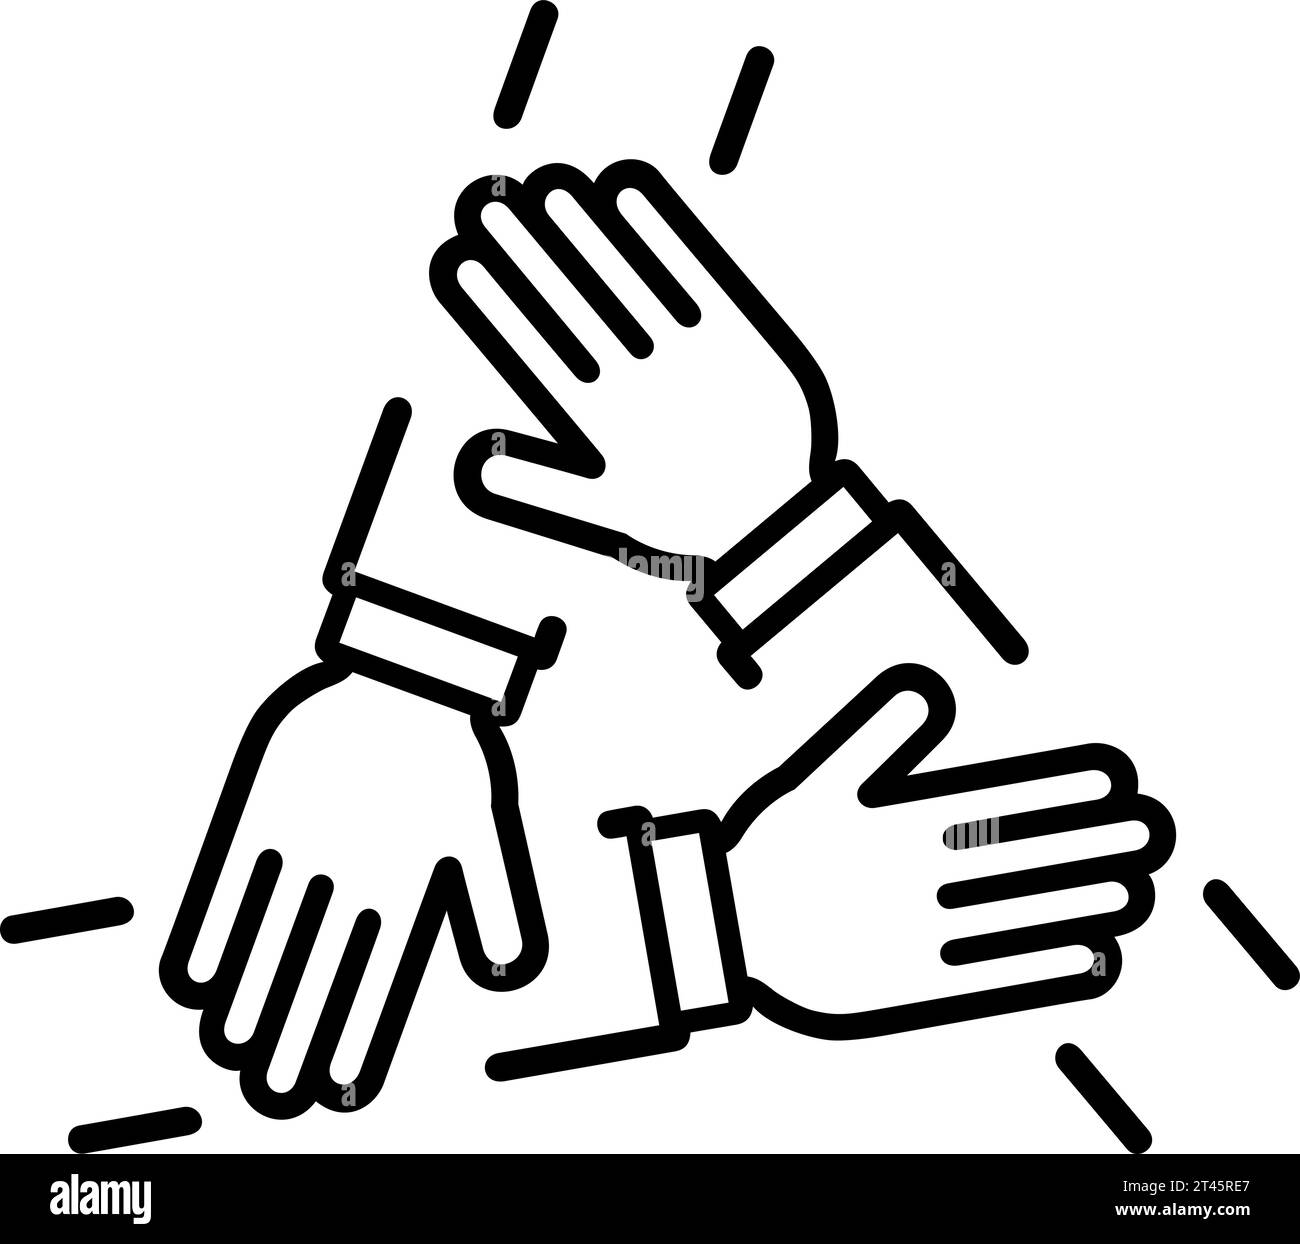 Handshake-Symbol mit drei Händen als Konzept für Unterstützung, Vereinbarung oder Partnerschaft Stock Vektor